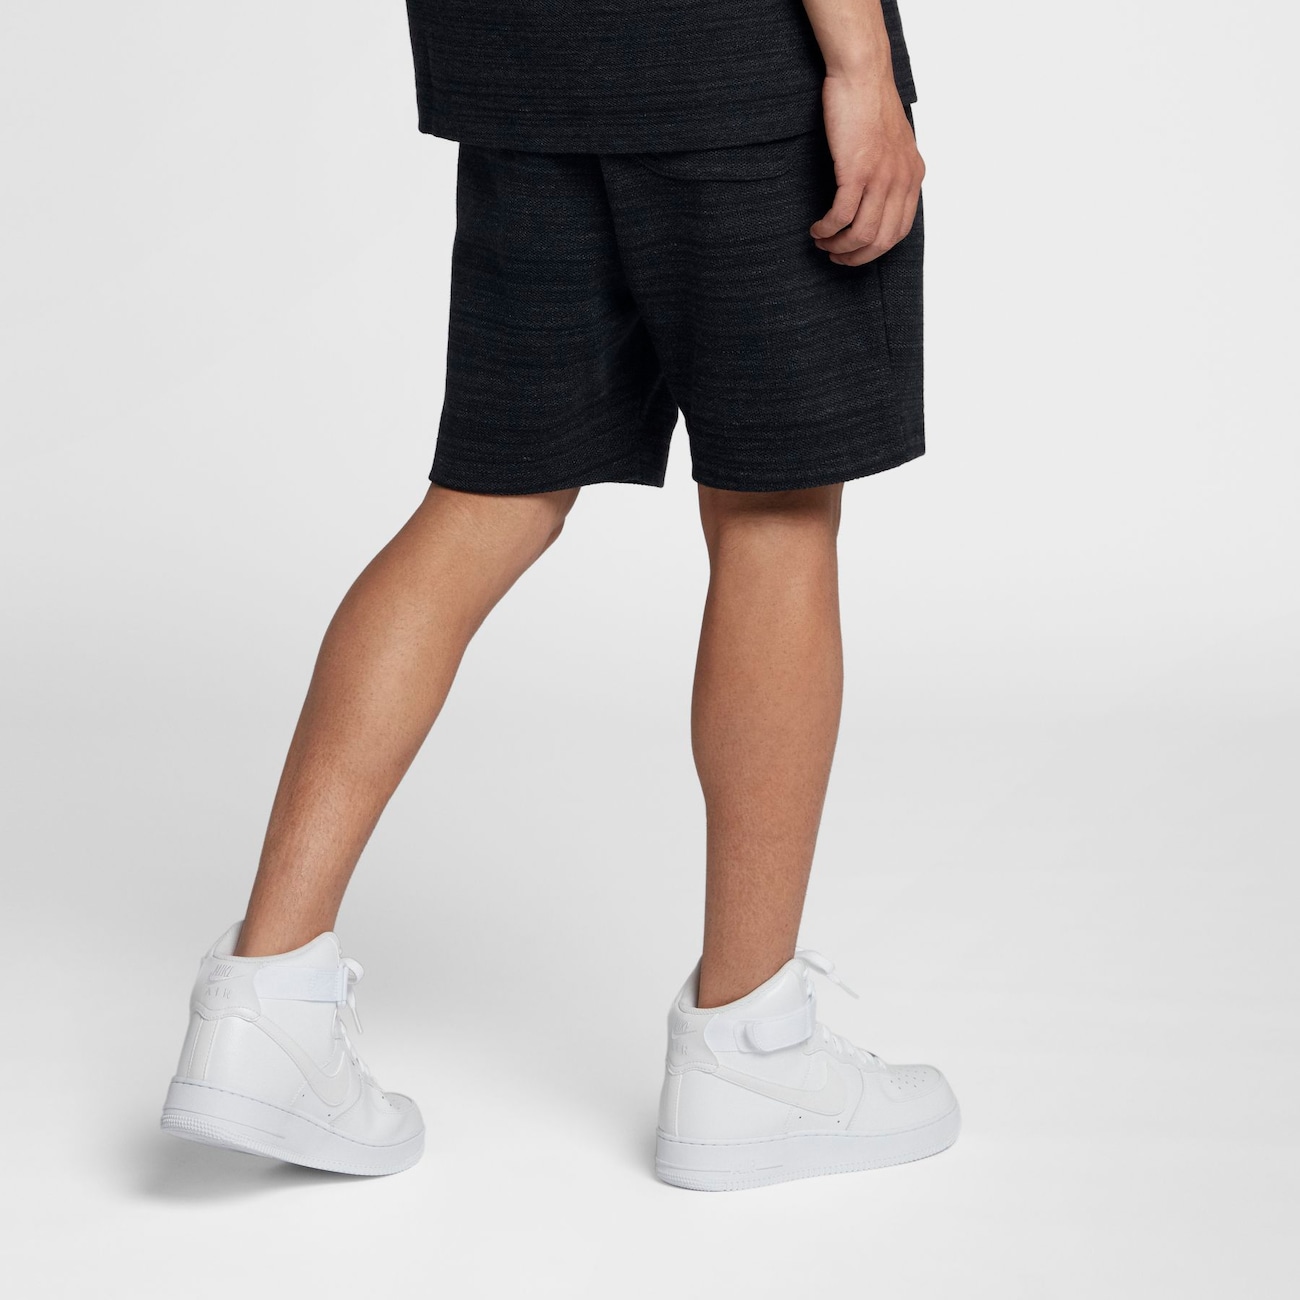 Shorts Nike Sportswear Advance 15 Masculino - Foto 3